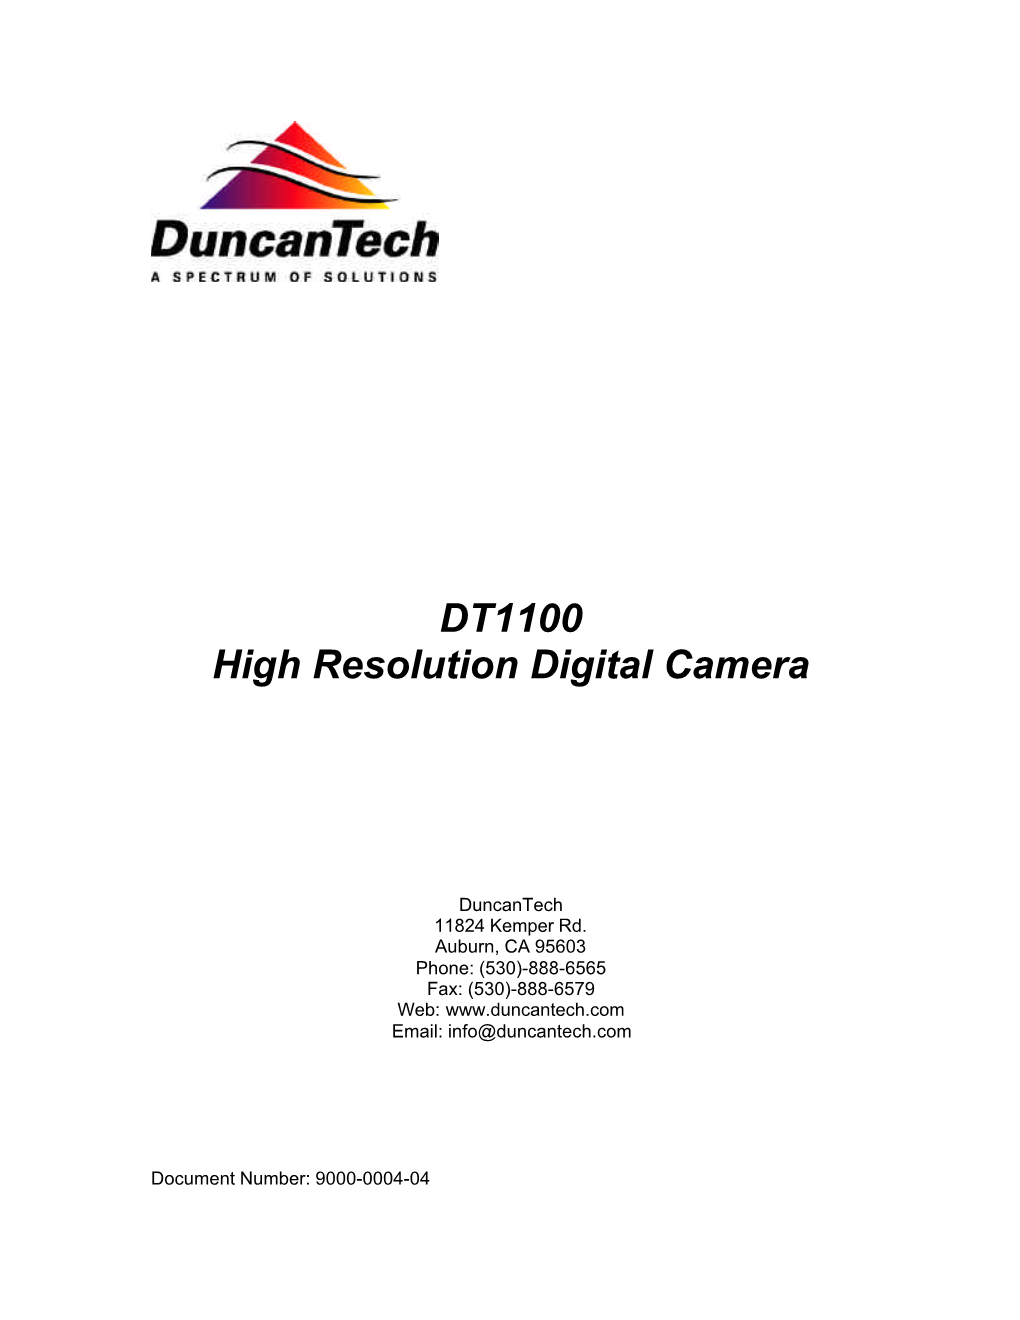 DT1100 High Resolution Digital Camera